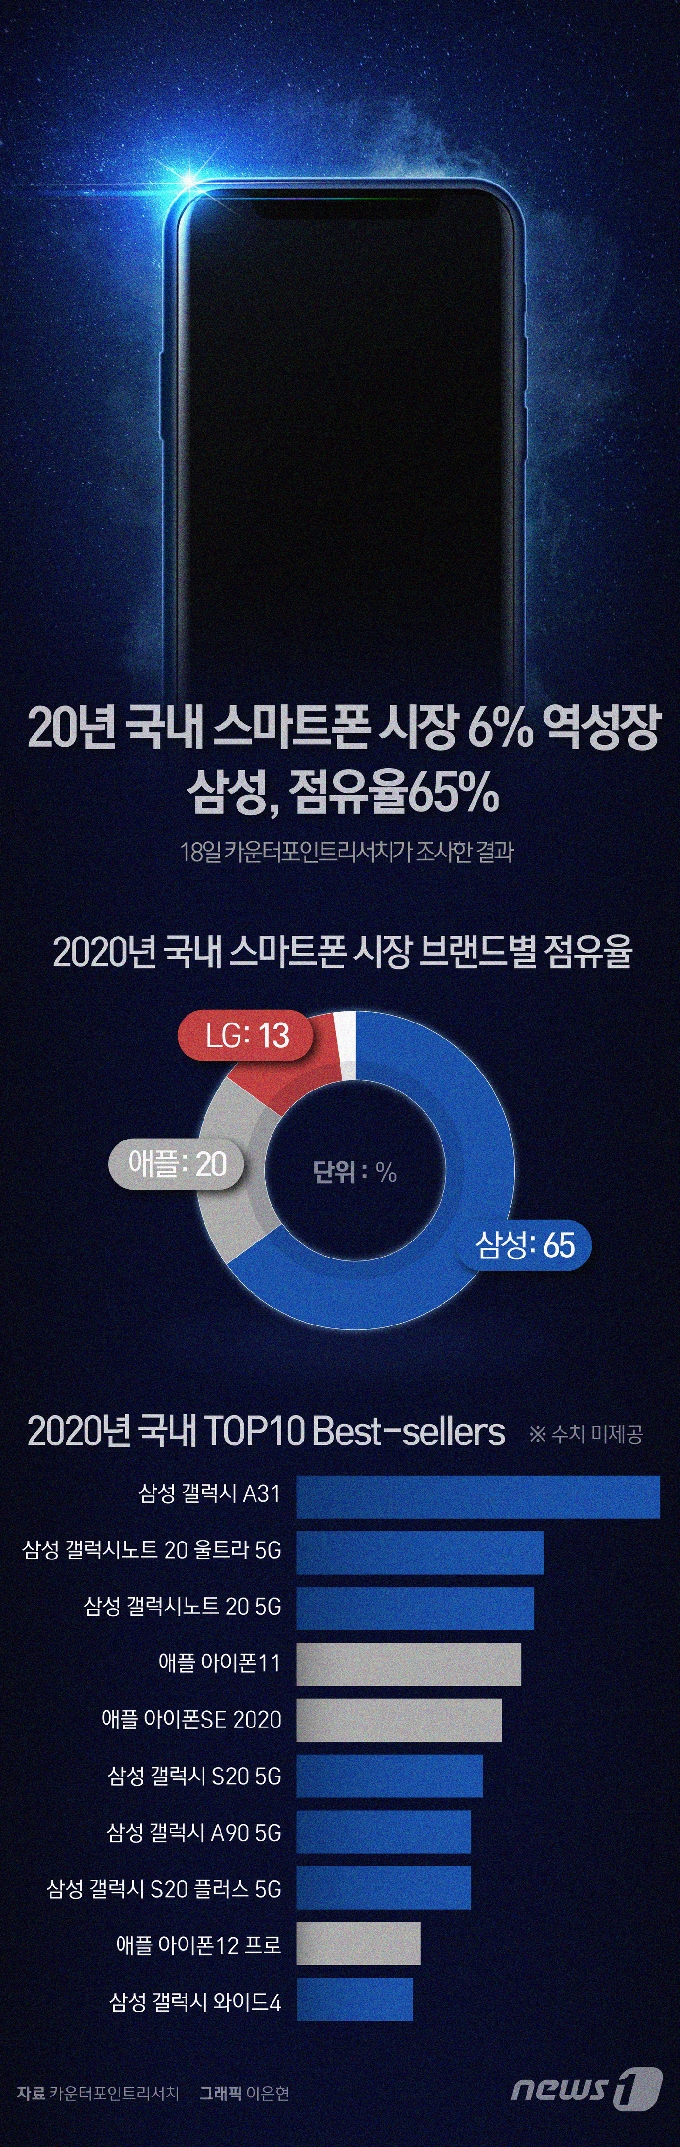 [사진] [그래픽뉴스] 20년 국내 스마트폰 시장 6% 역성장…삼성, 점유율 65%